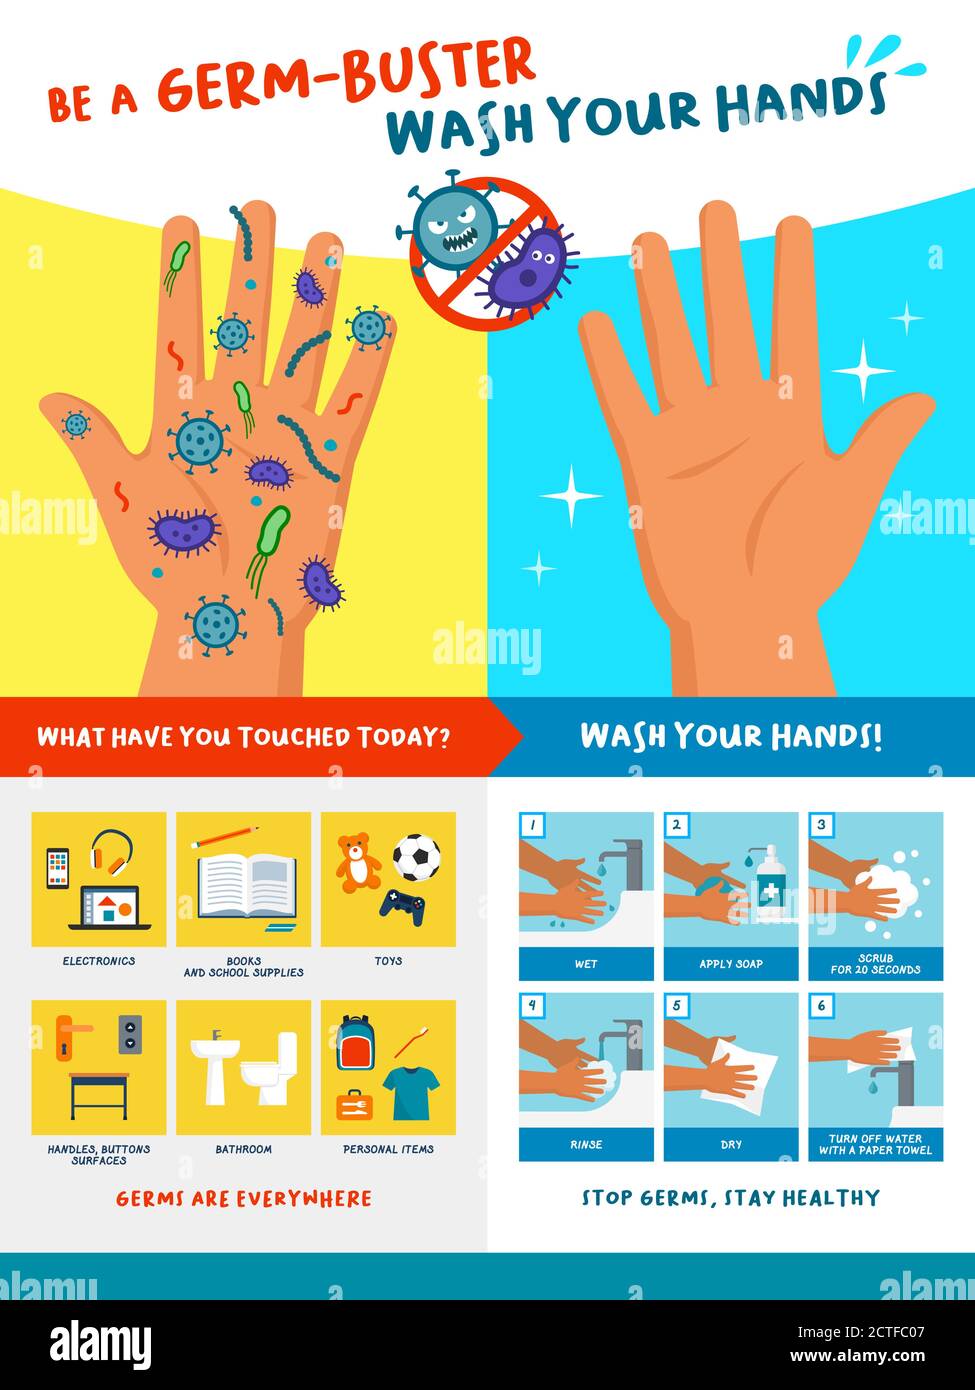 Seien Sie ein Keimbuster: Waschen Sie Ihre Hände, pädagogisches Plakat für Kinder mit sicherem Händewaschverfahren Stock Vektor